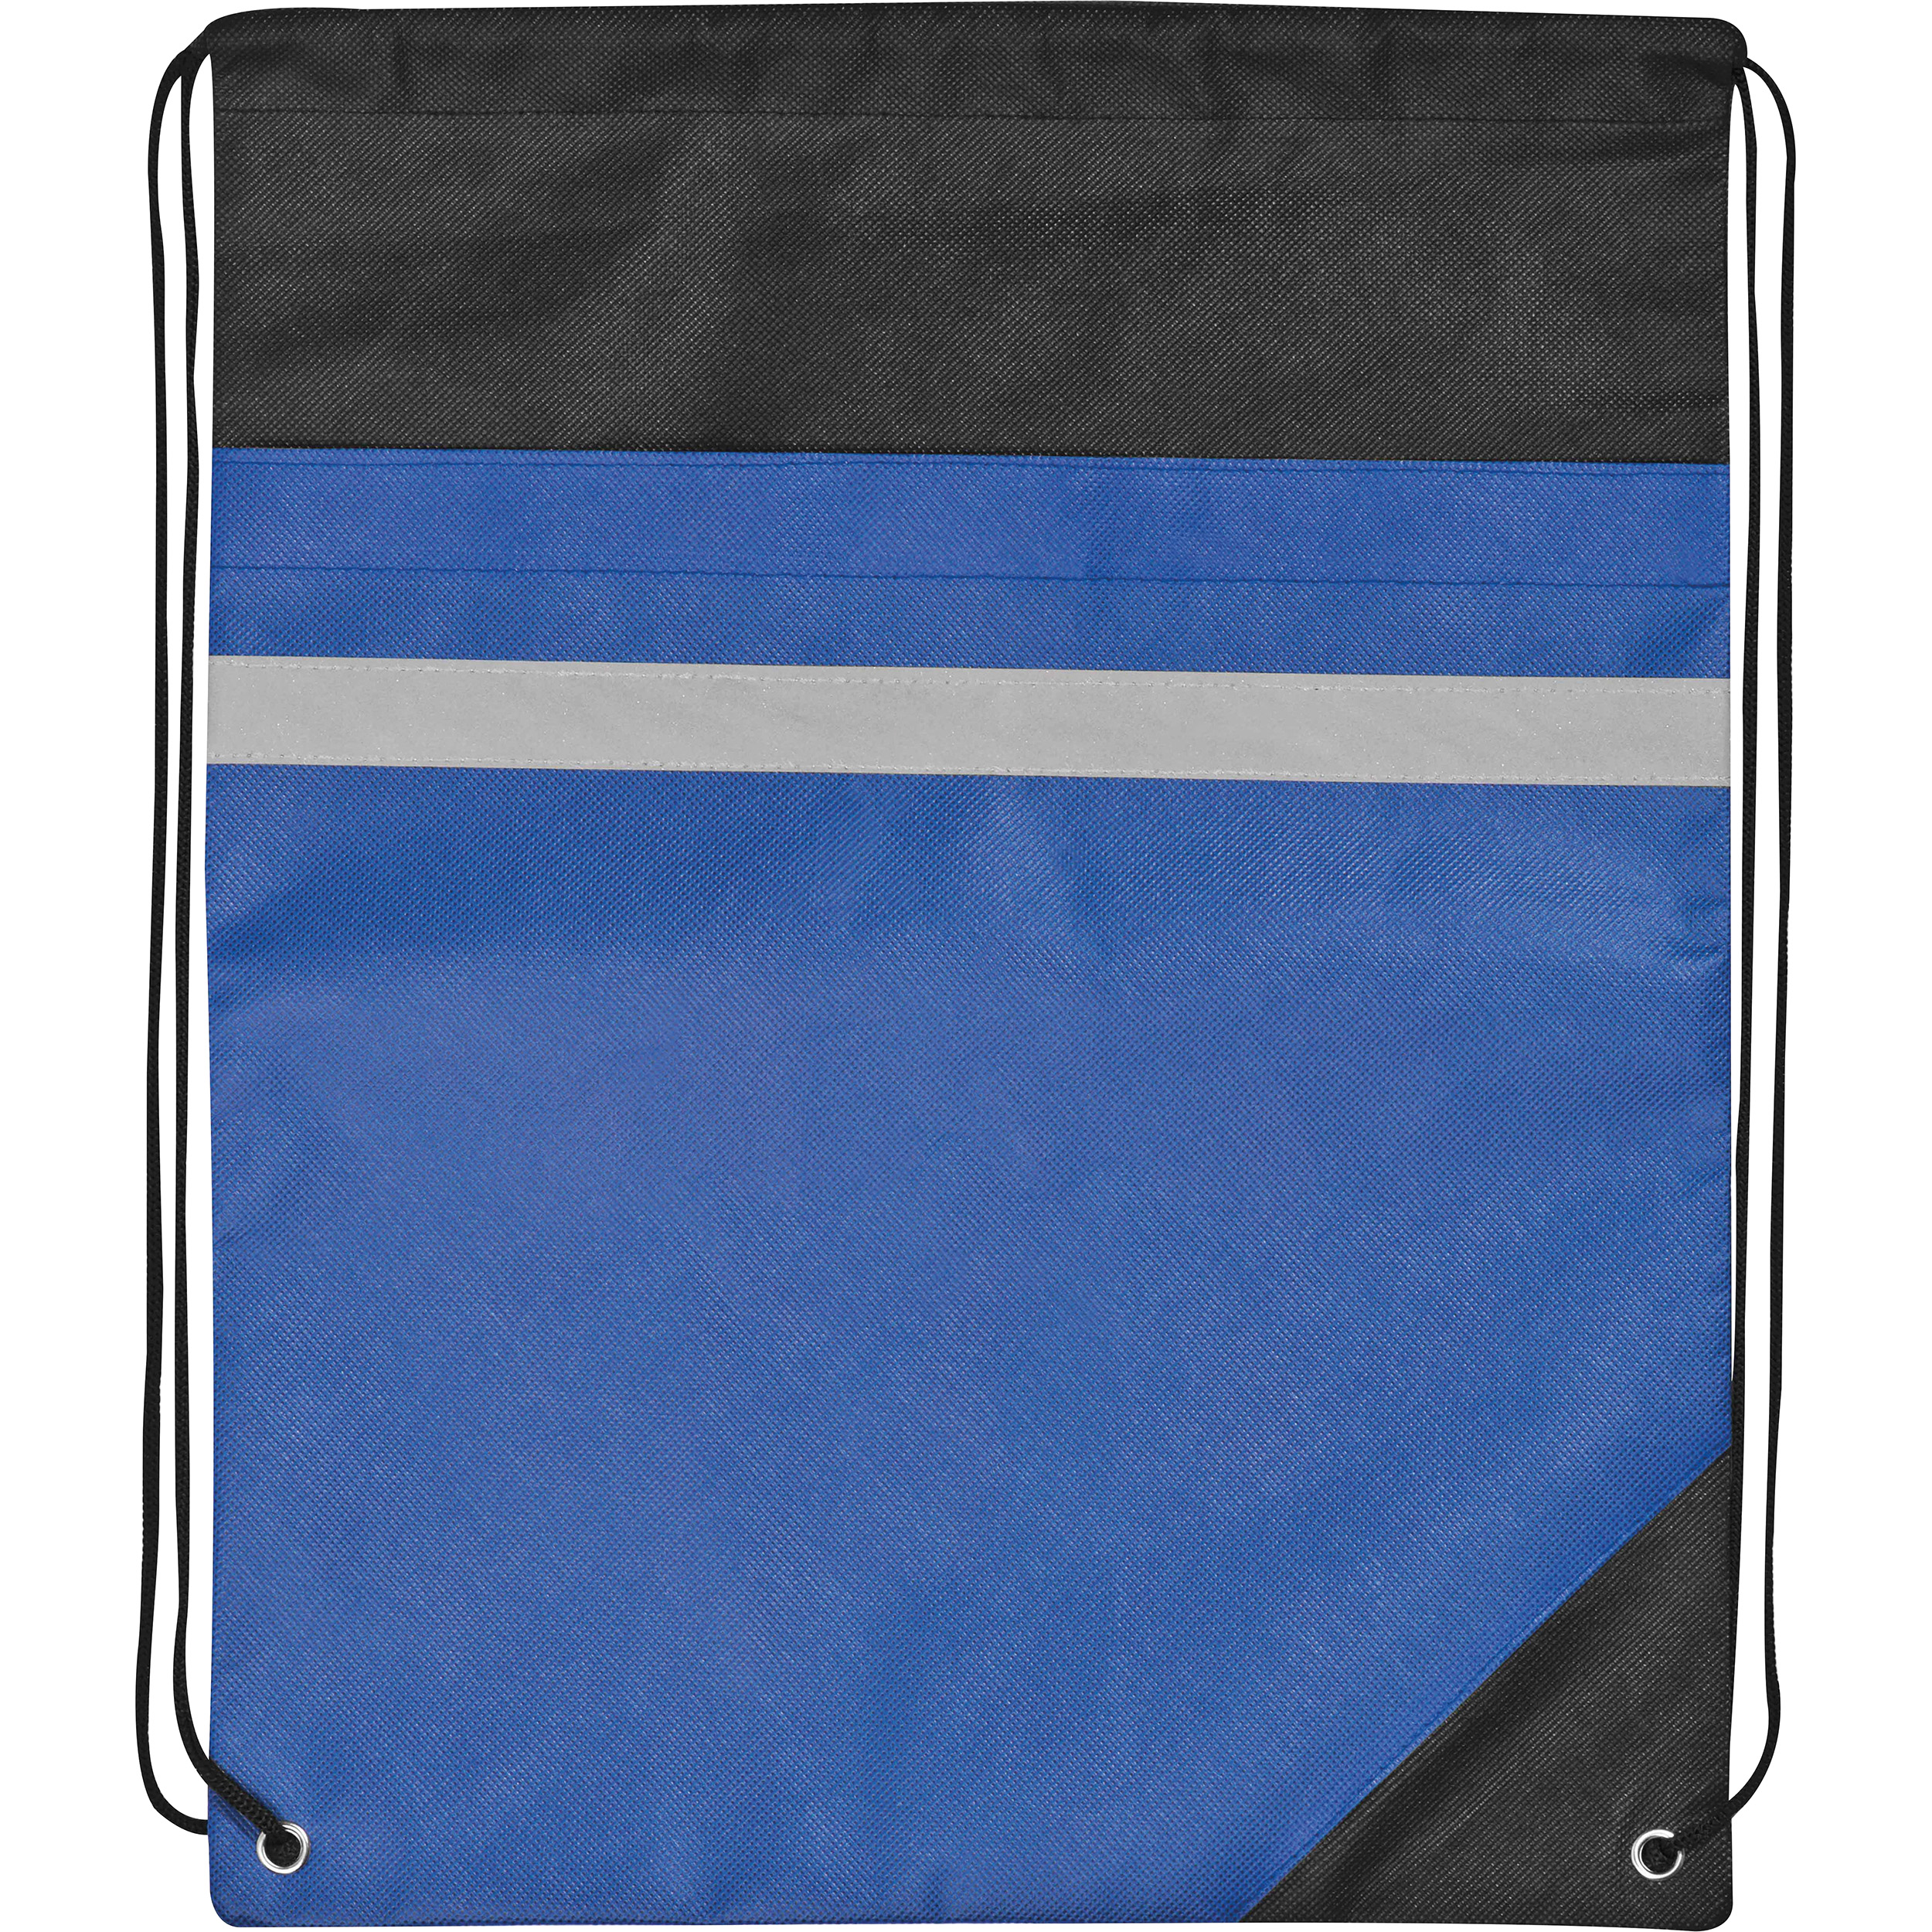 Non-woven gym bag including reflectable stripe